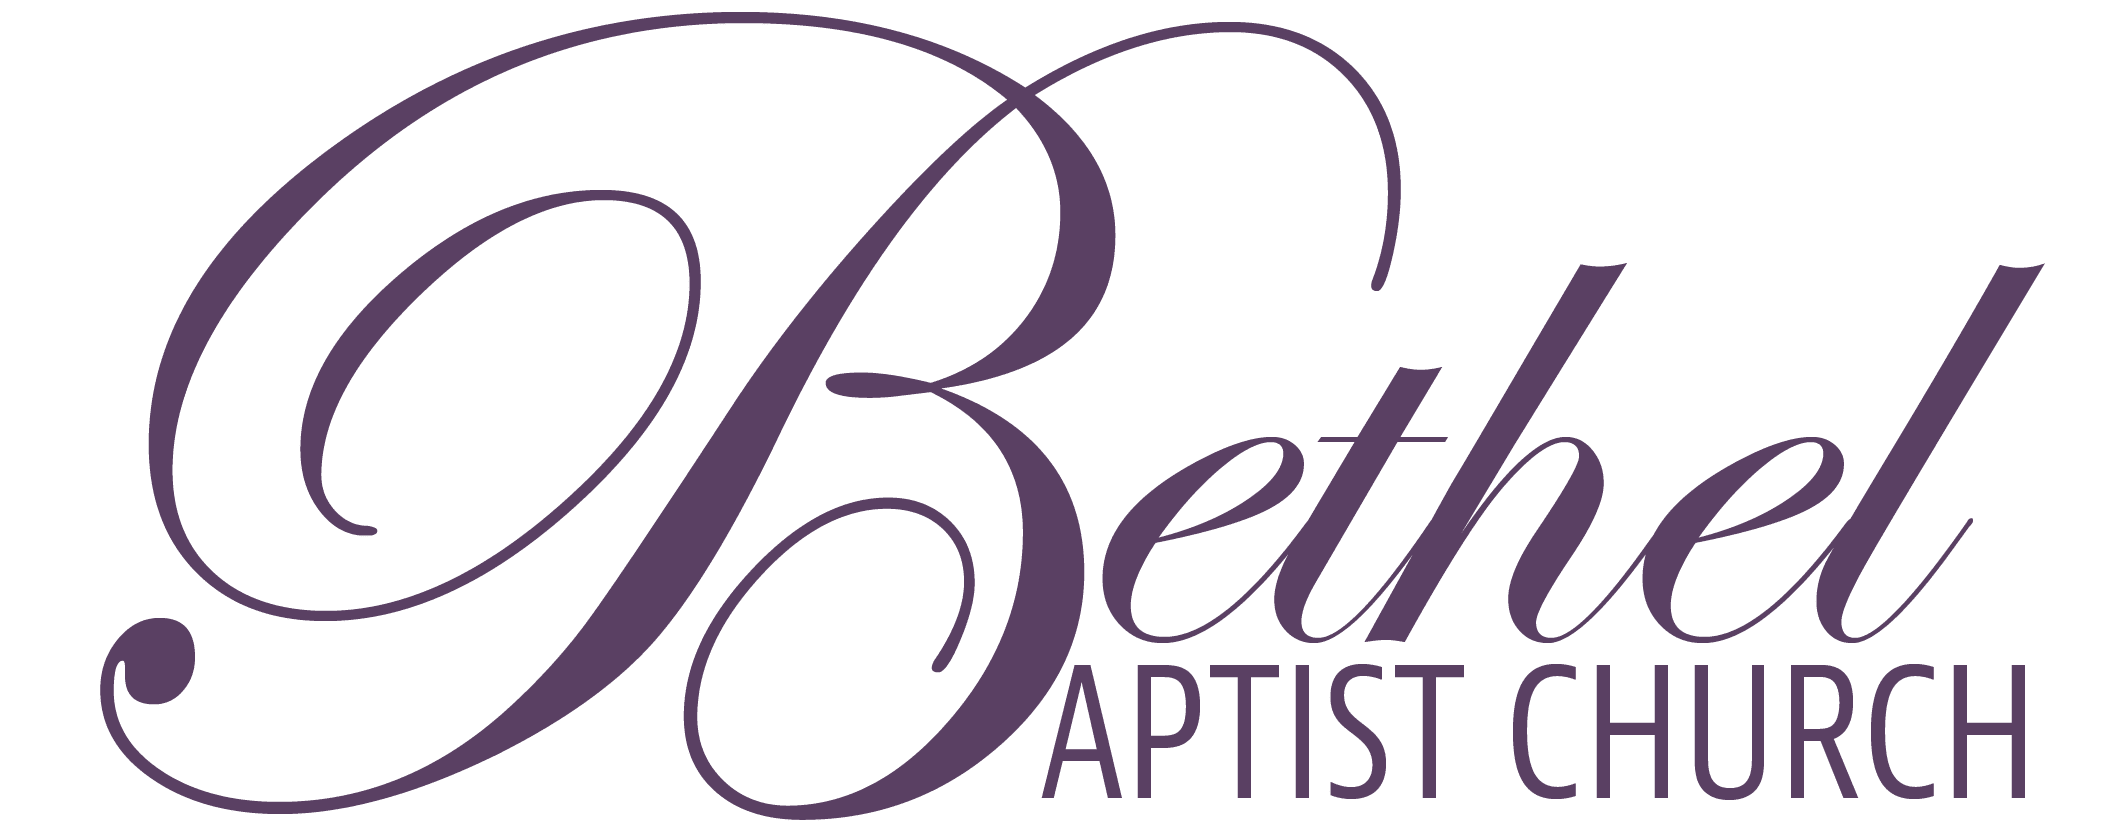 Bethel Logo Sans plum-01